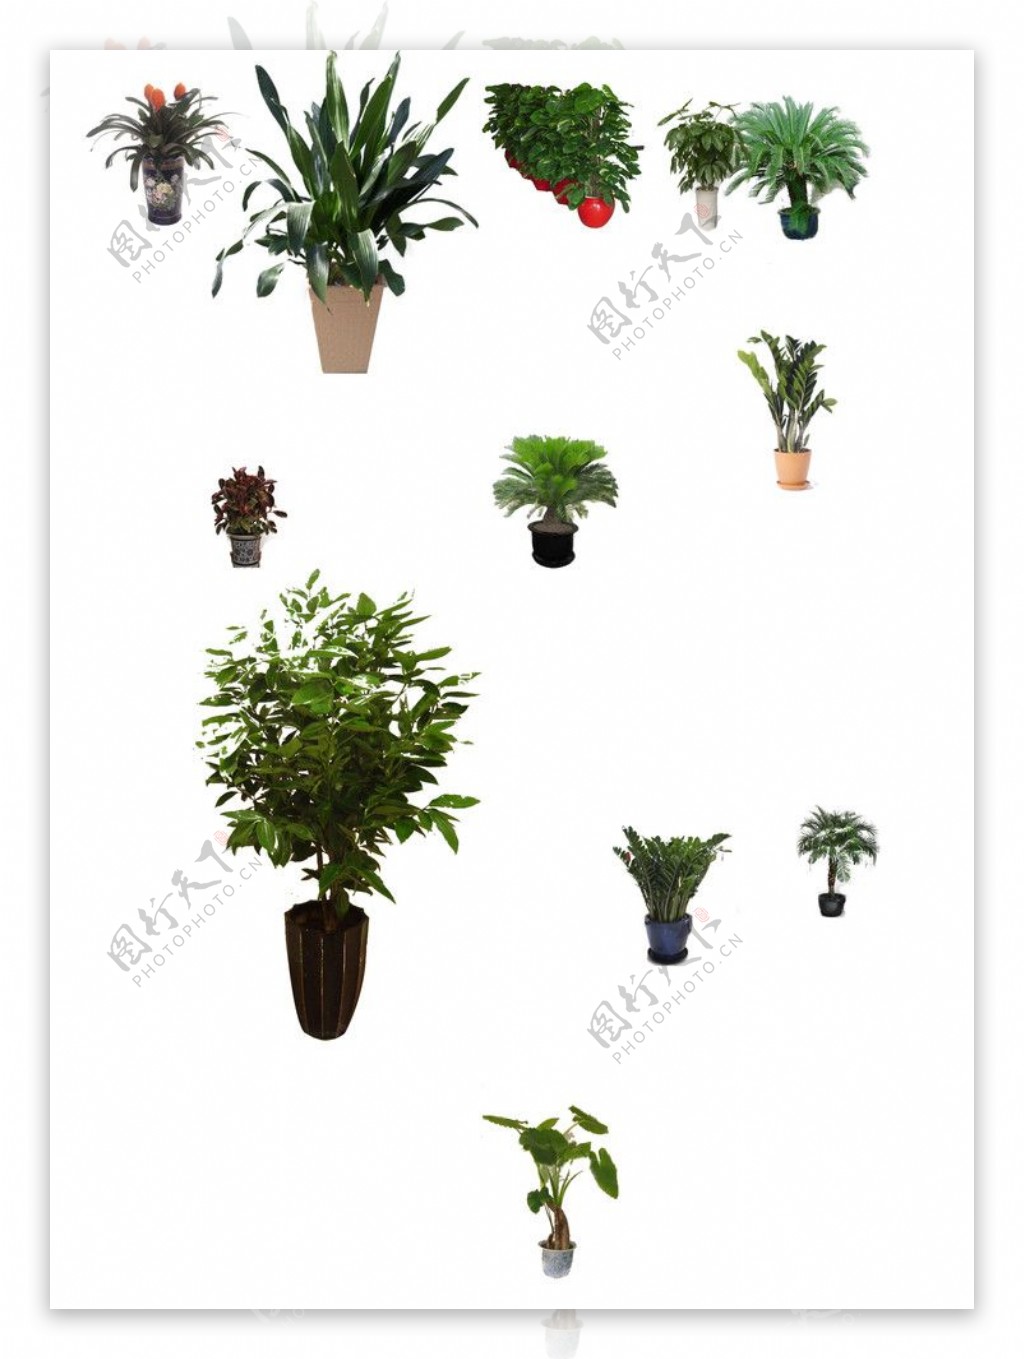 盆景植物素材抠图不精确图片